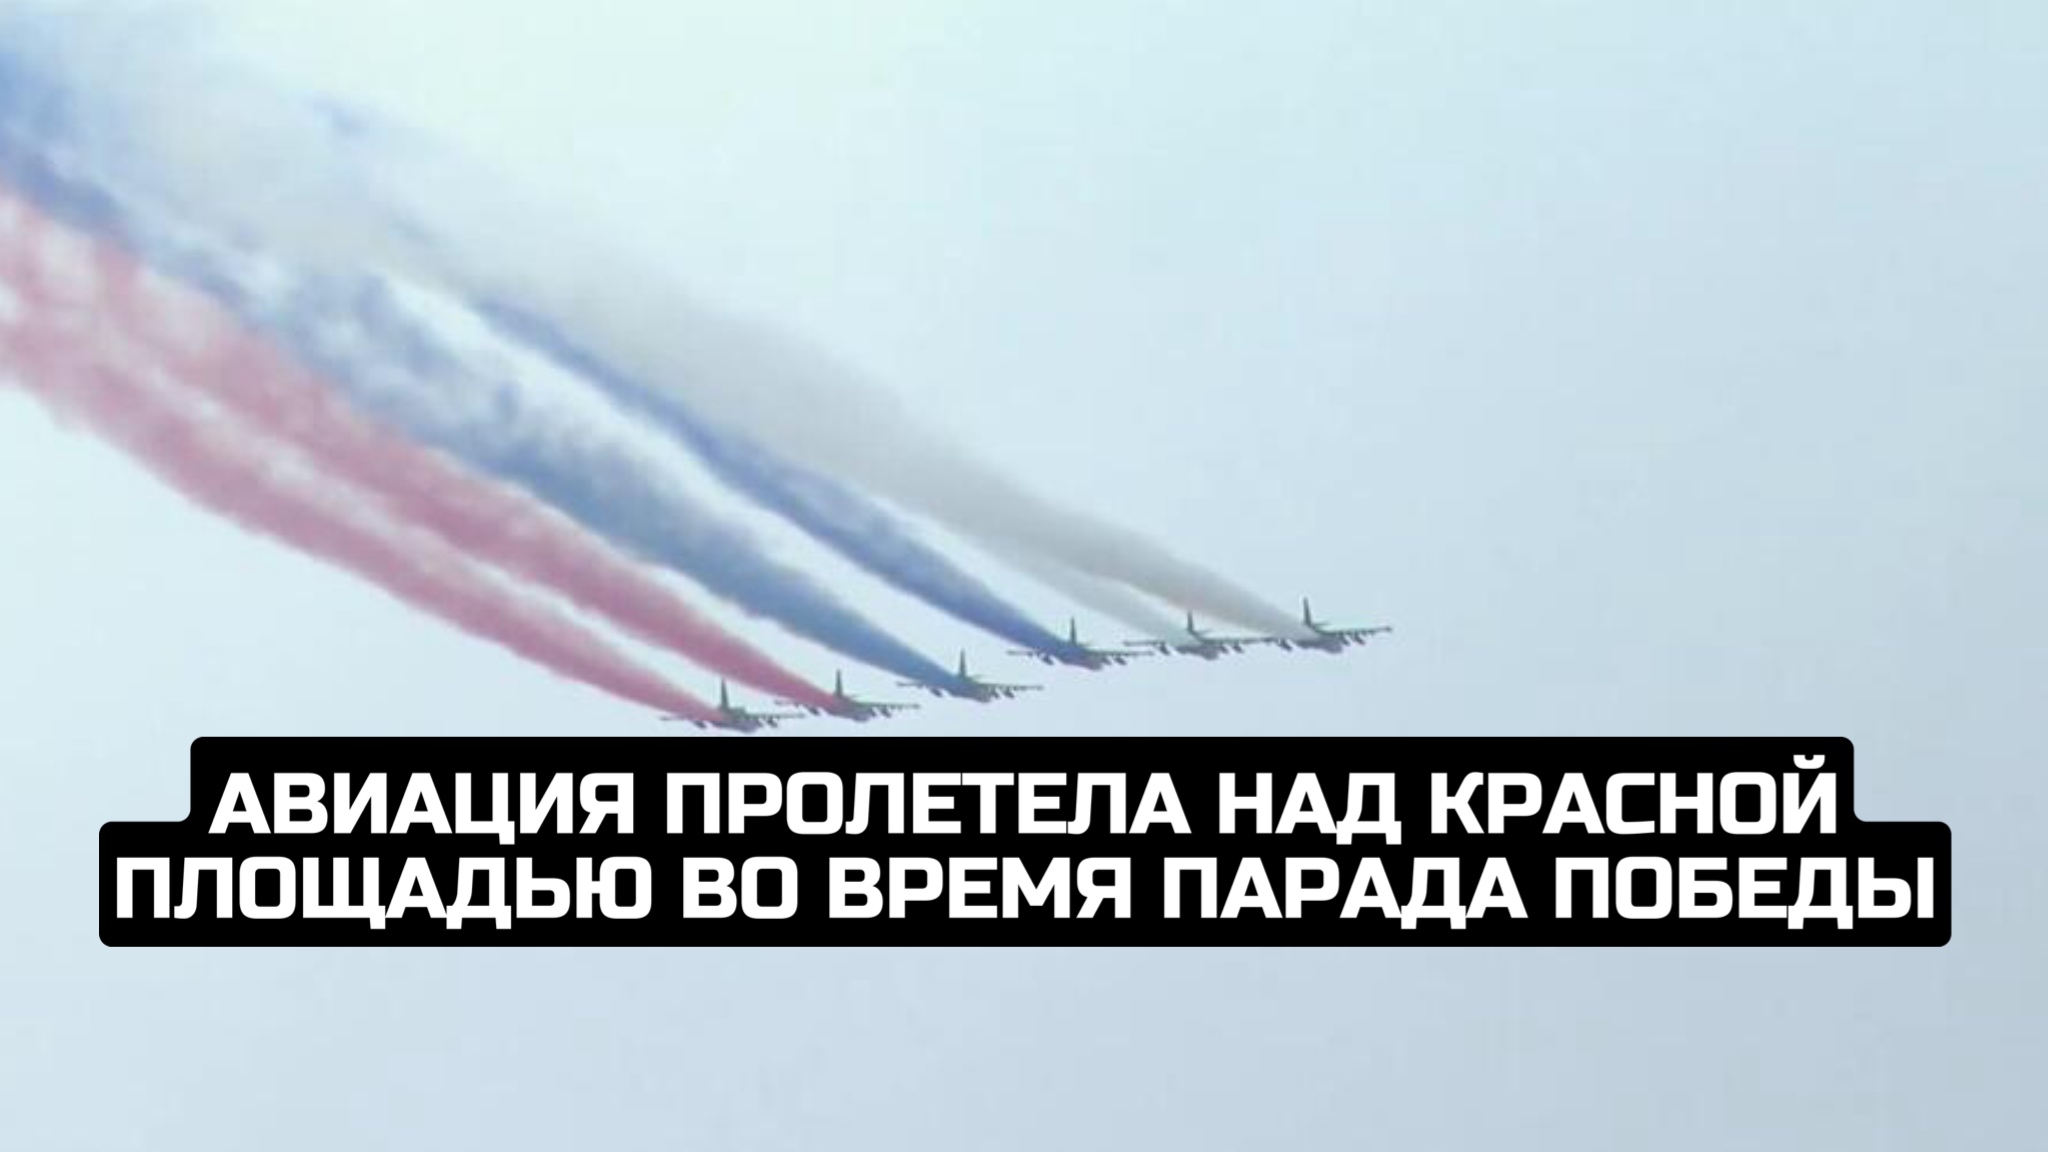 Авиация пролетела над Красной площадью во время парада Победы